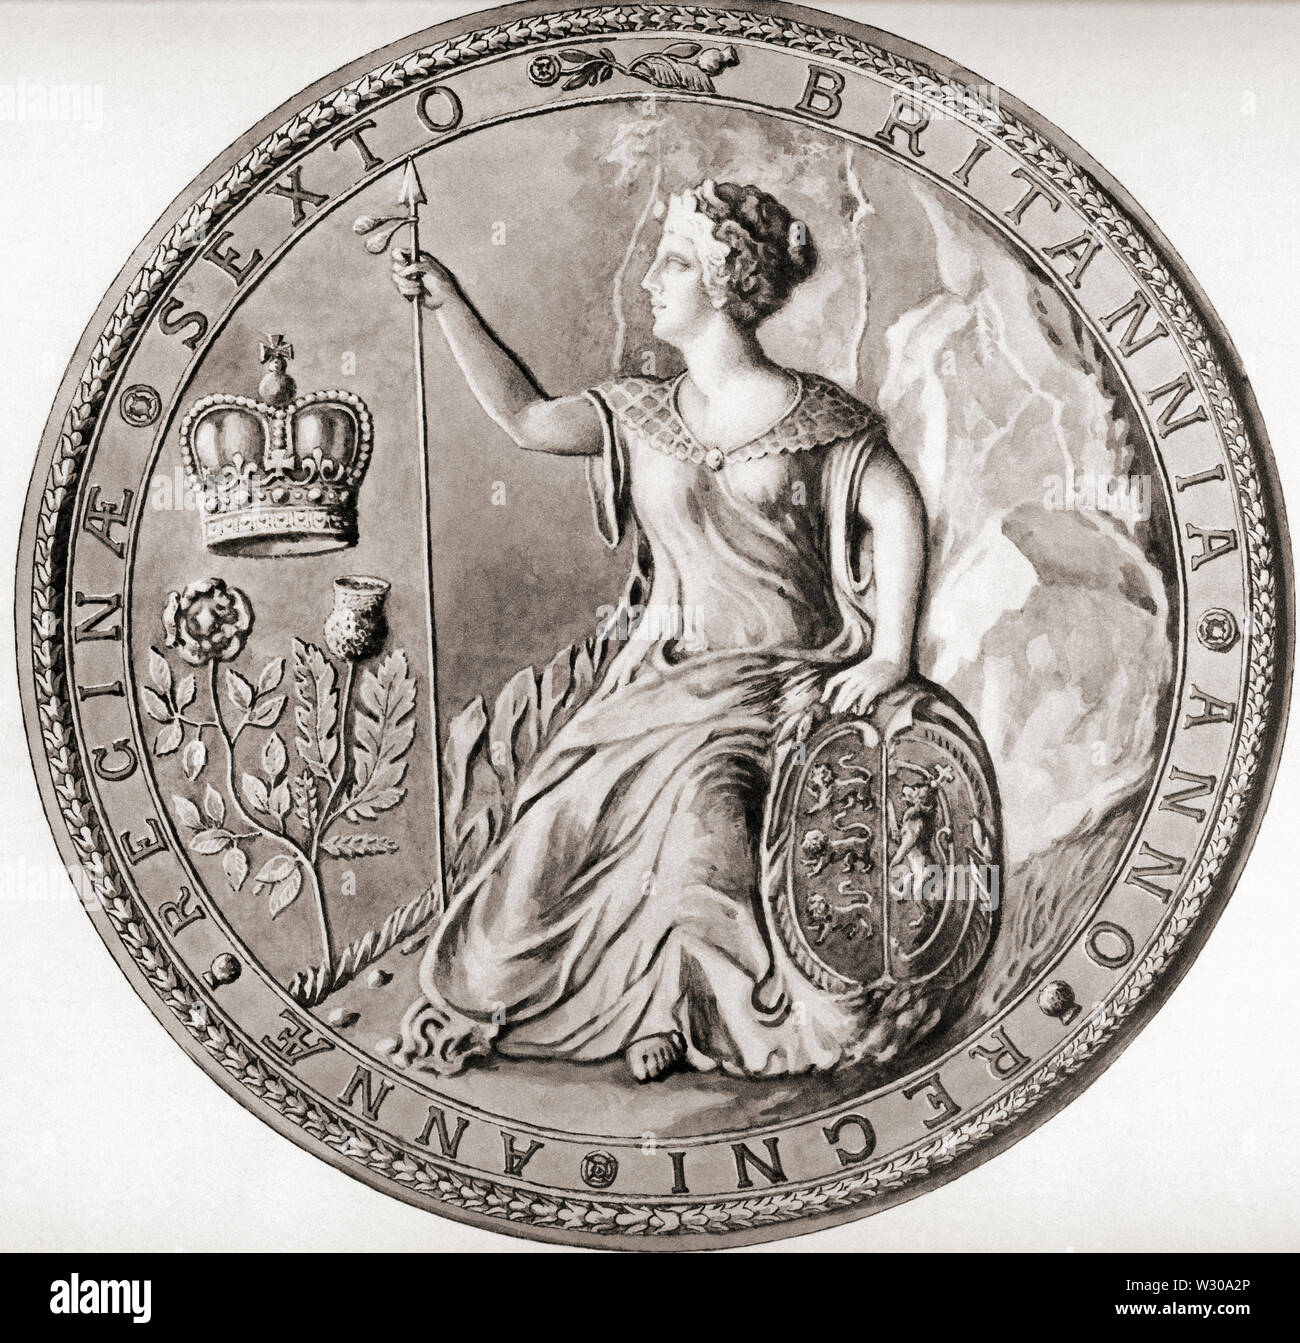 Deuxième grand sceau de la Reine Anne, 1707, commémorant l'union avec l'Écosse. Anne, reine de Grande-Bretagne, 1665 - 1714. Reine d'Angleterre, d'Écosse et d'Irlande. À partir d'une impression contemporaine, c.1935. Banque D'Images